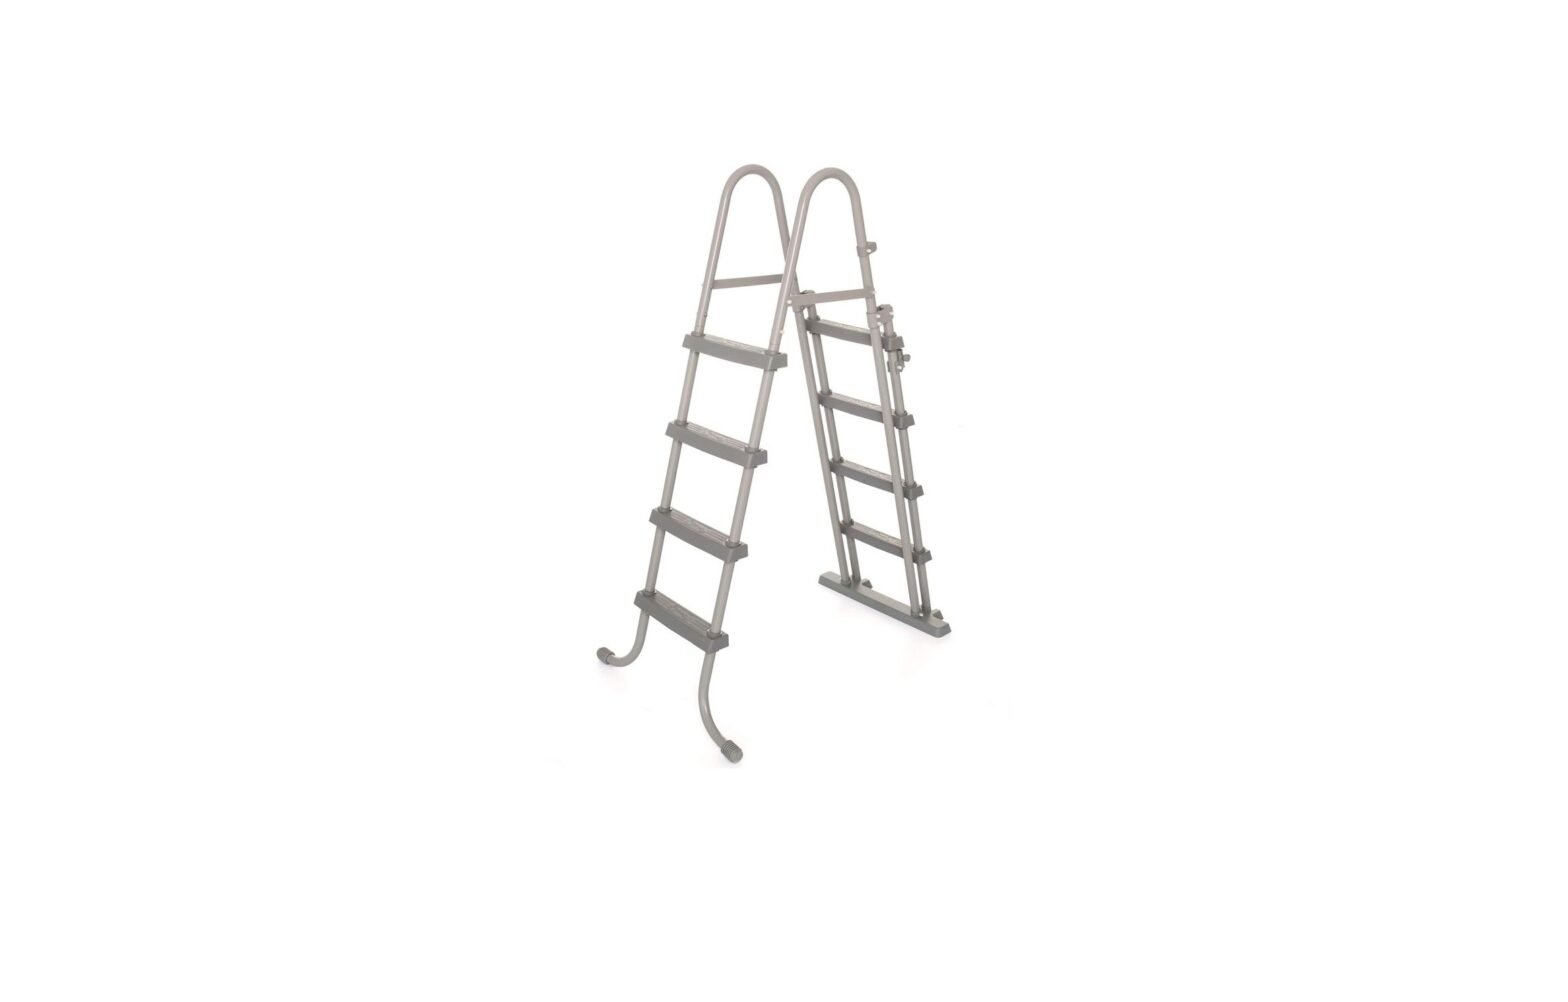 BESTWAY 58331 1.22m (48 Inch) Pool Ladder User Manual